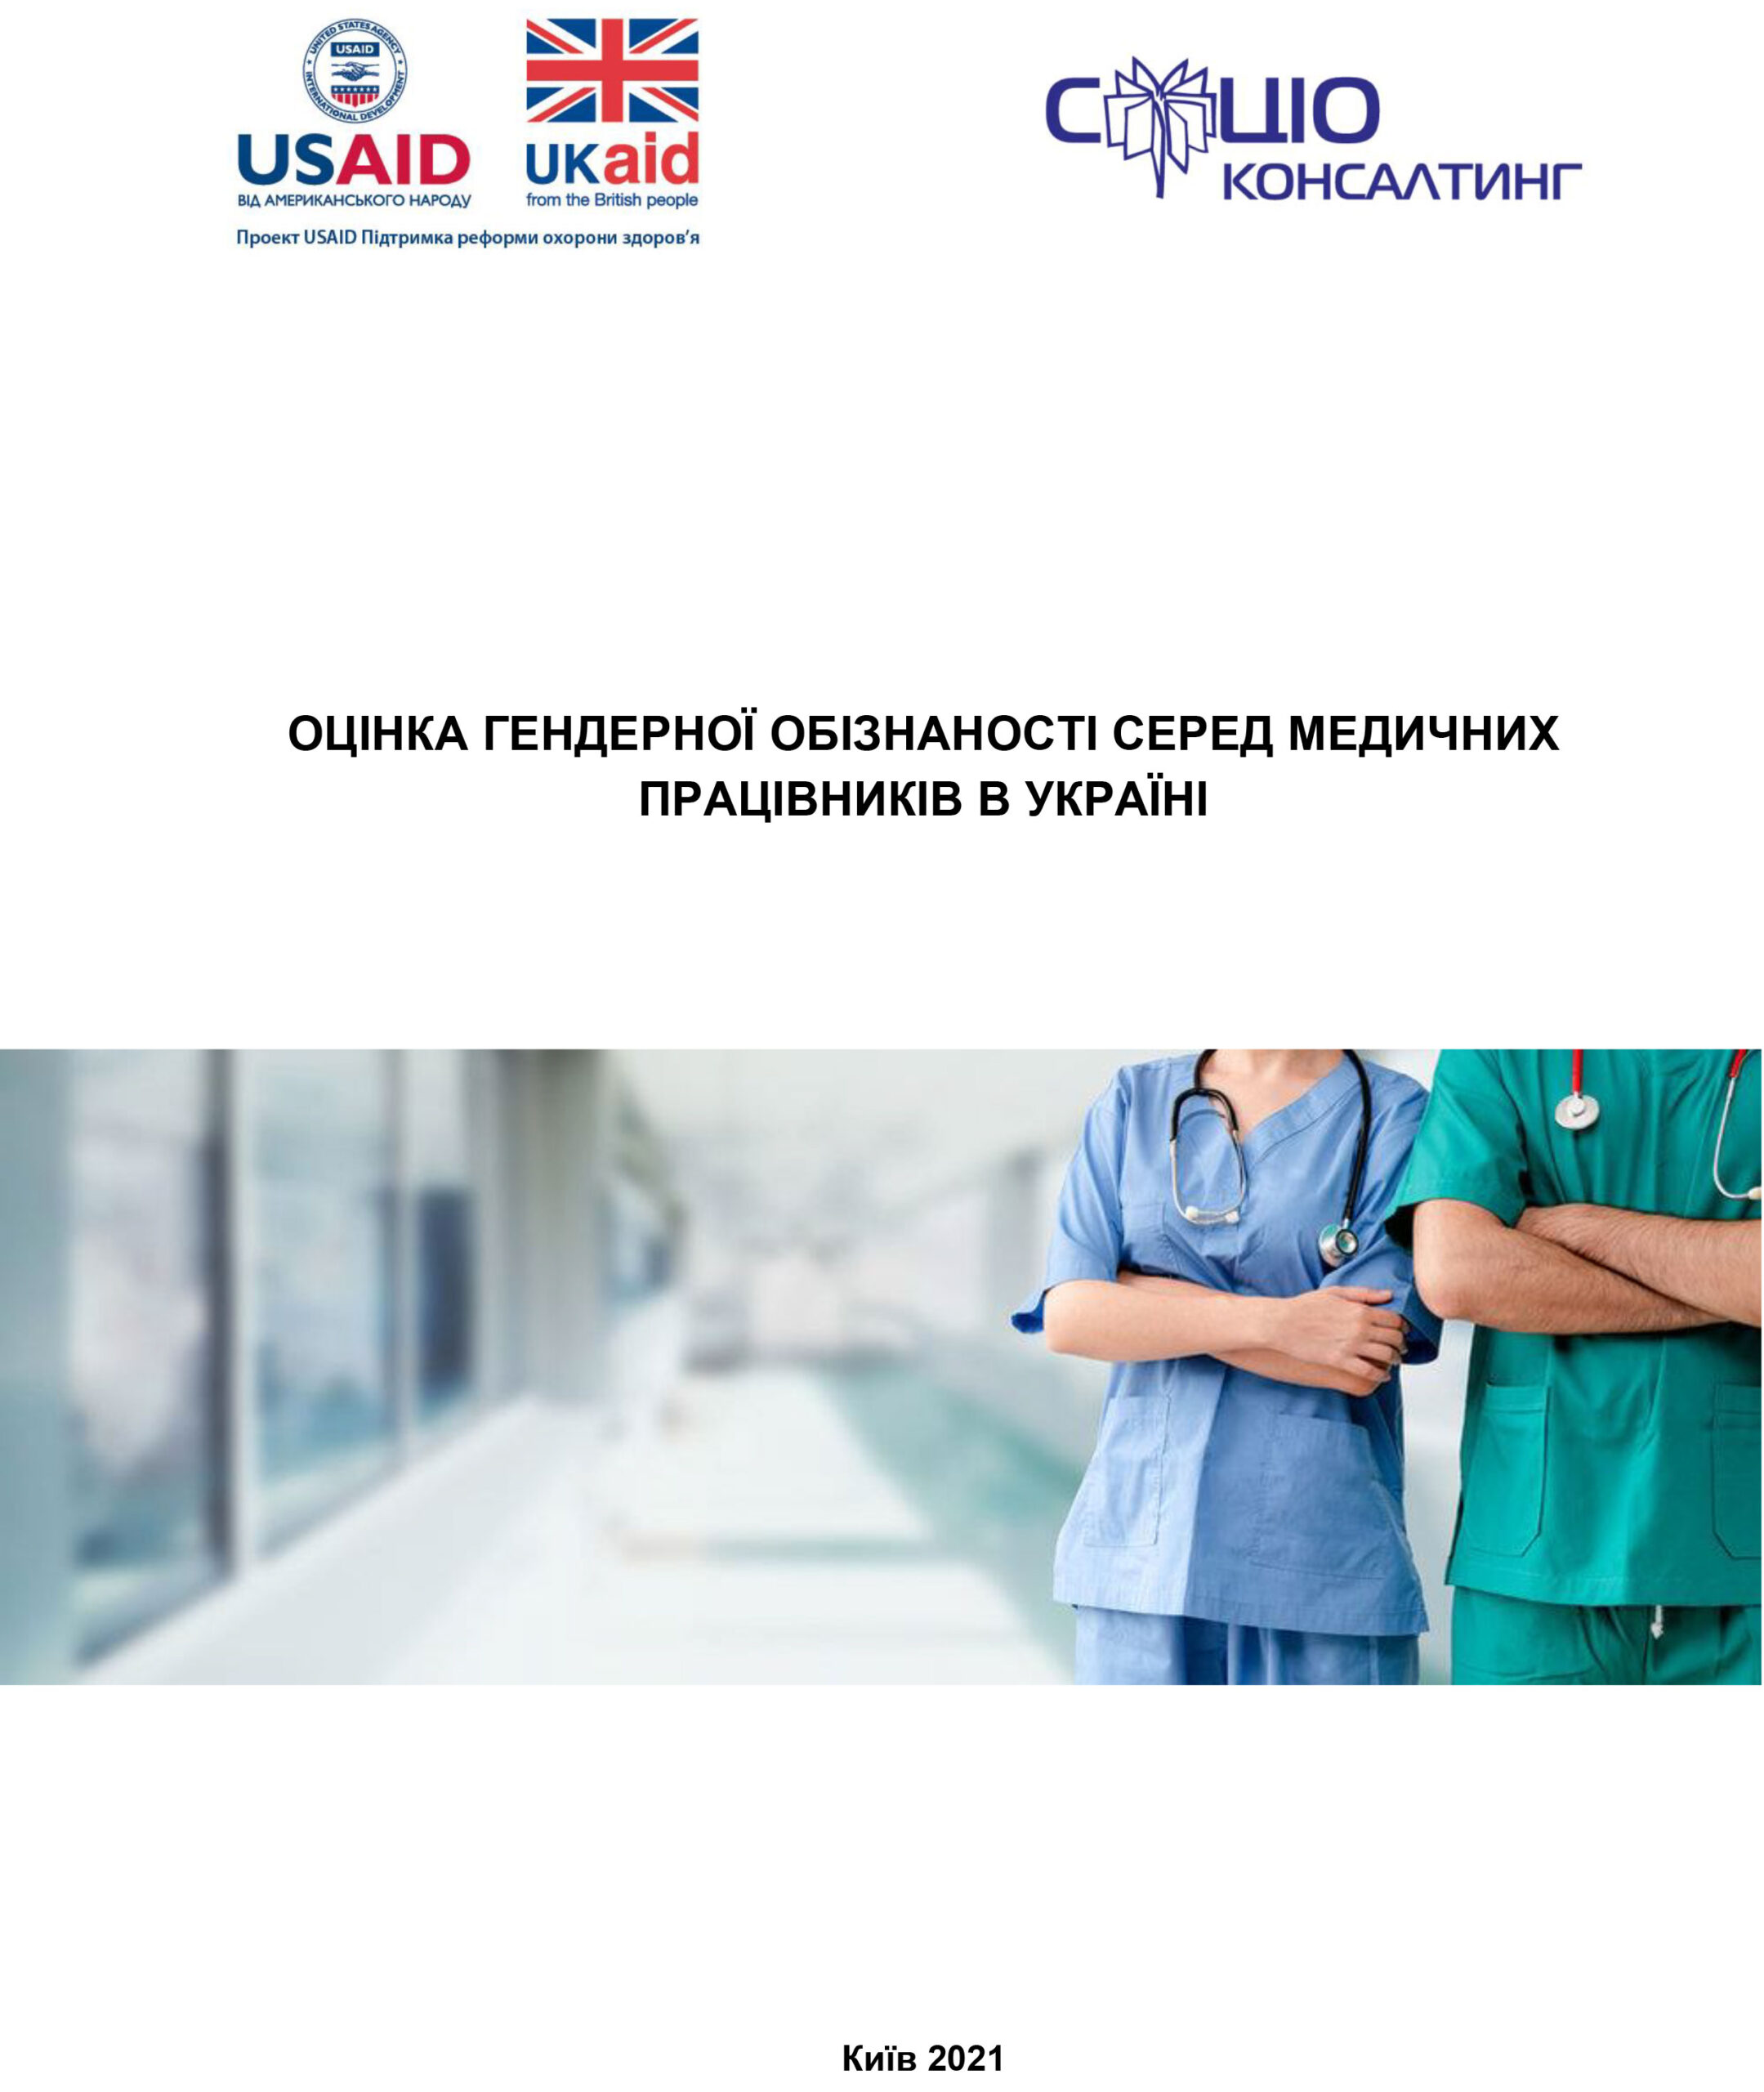 Оцінка ґендерної обізнаності серед медичних працівників в Україні